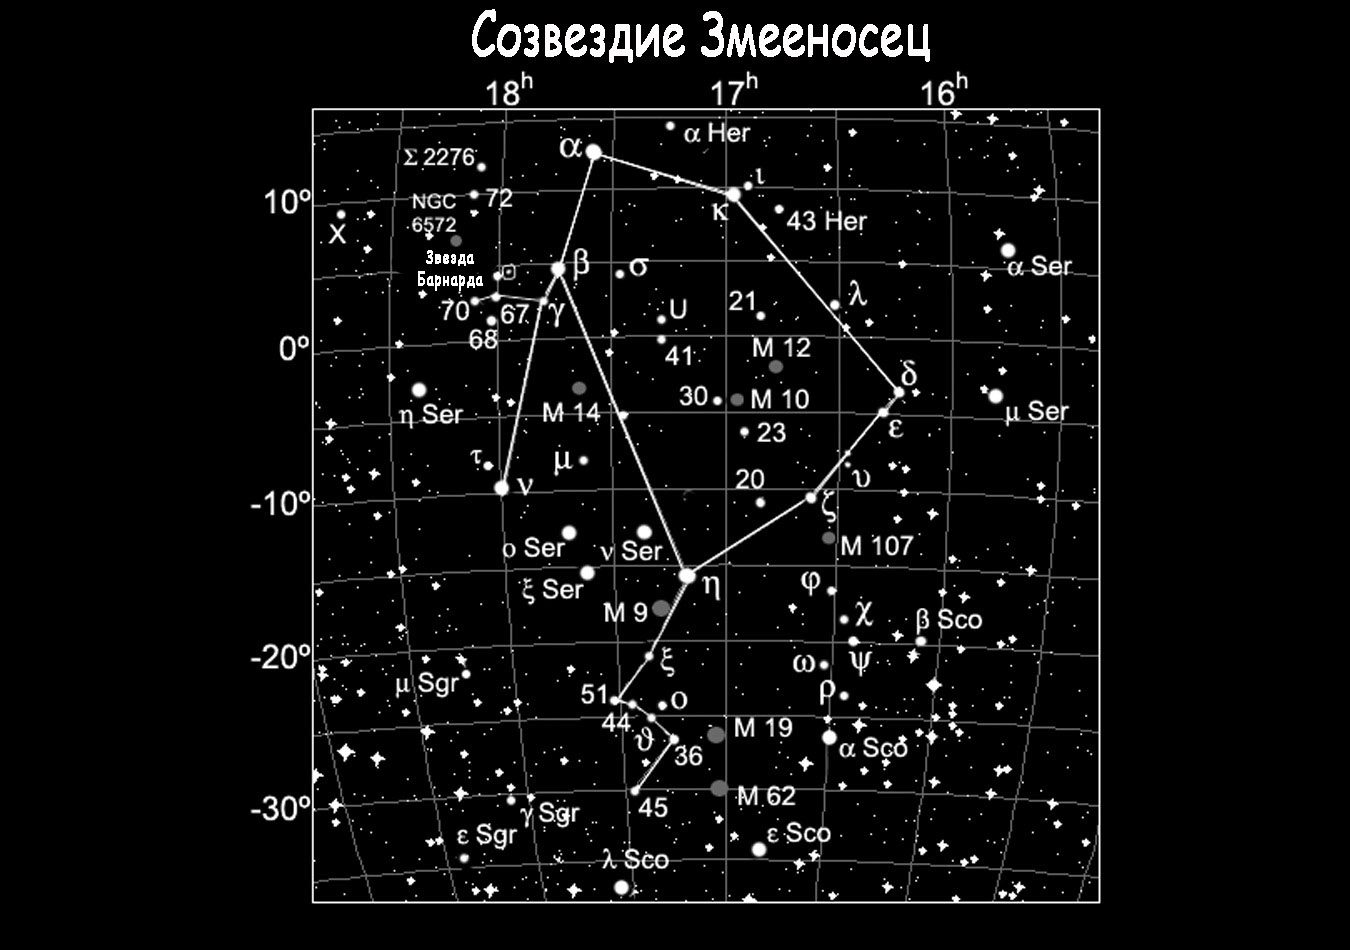 Constellation Serpentine